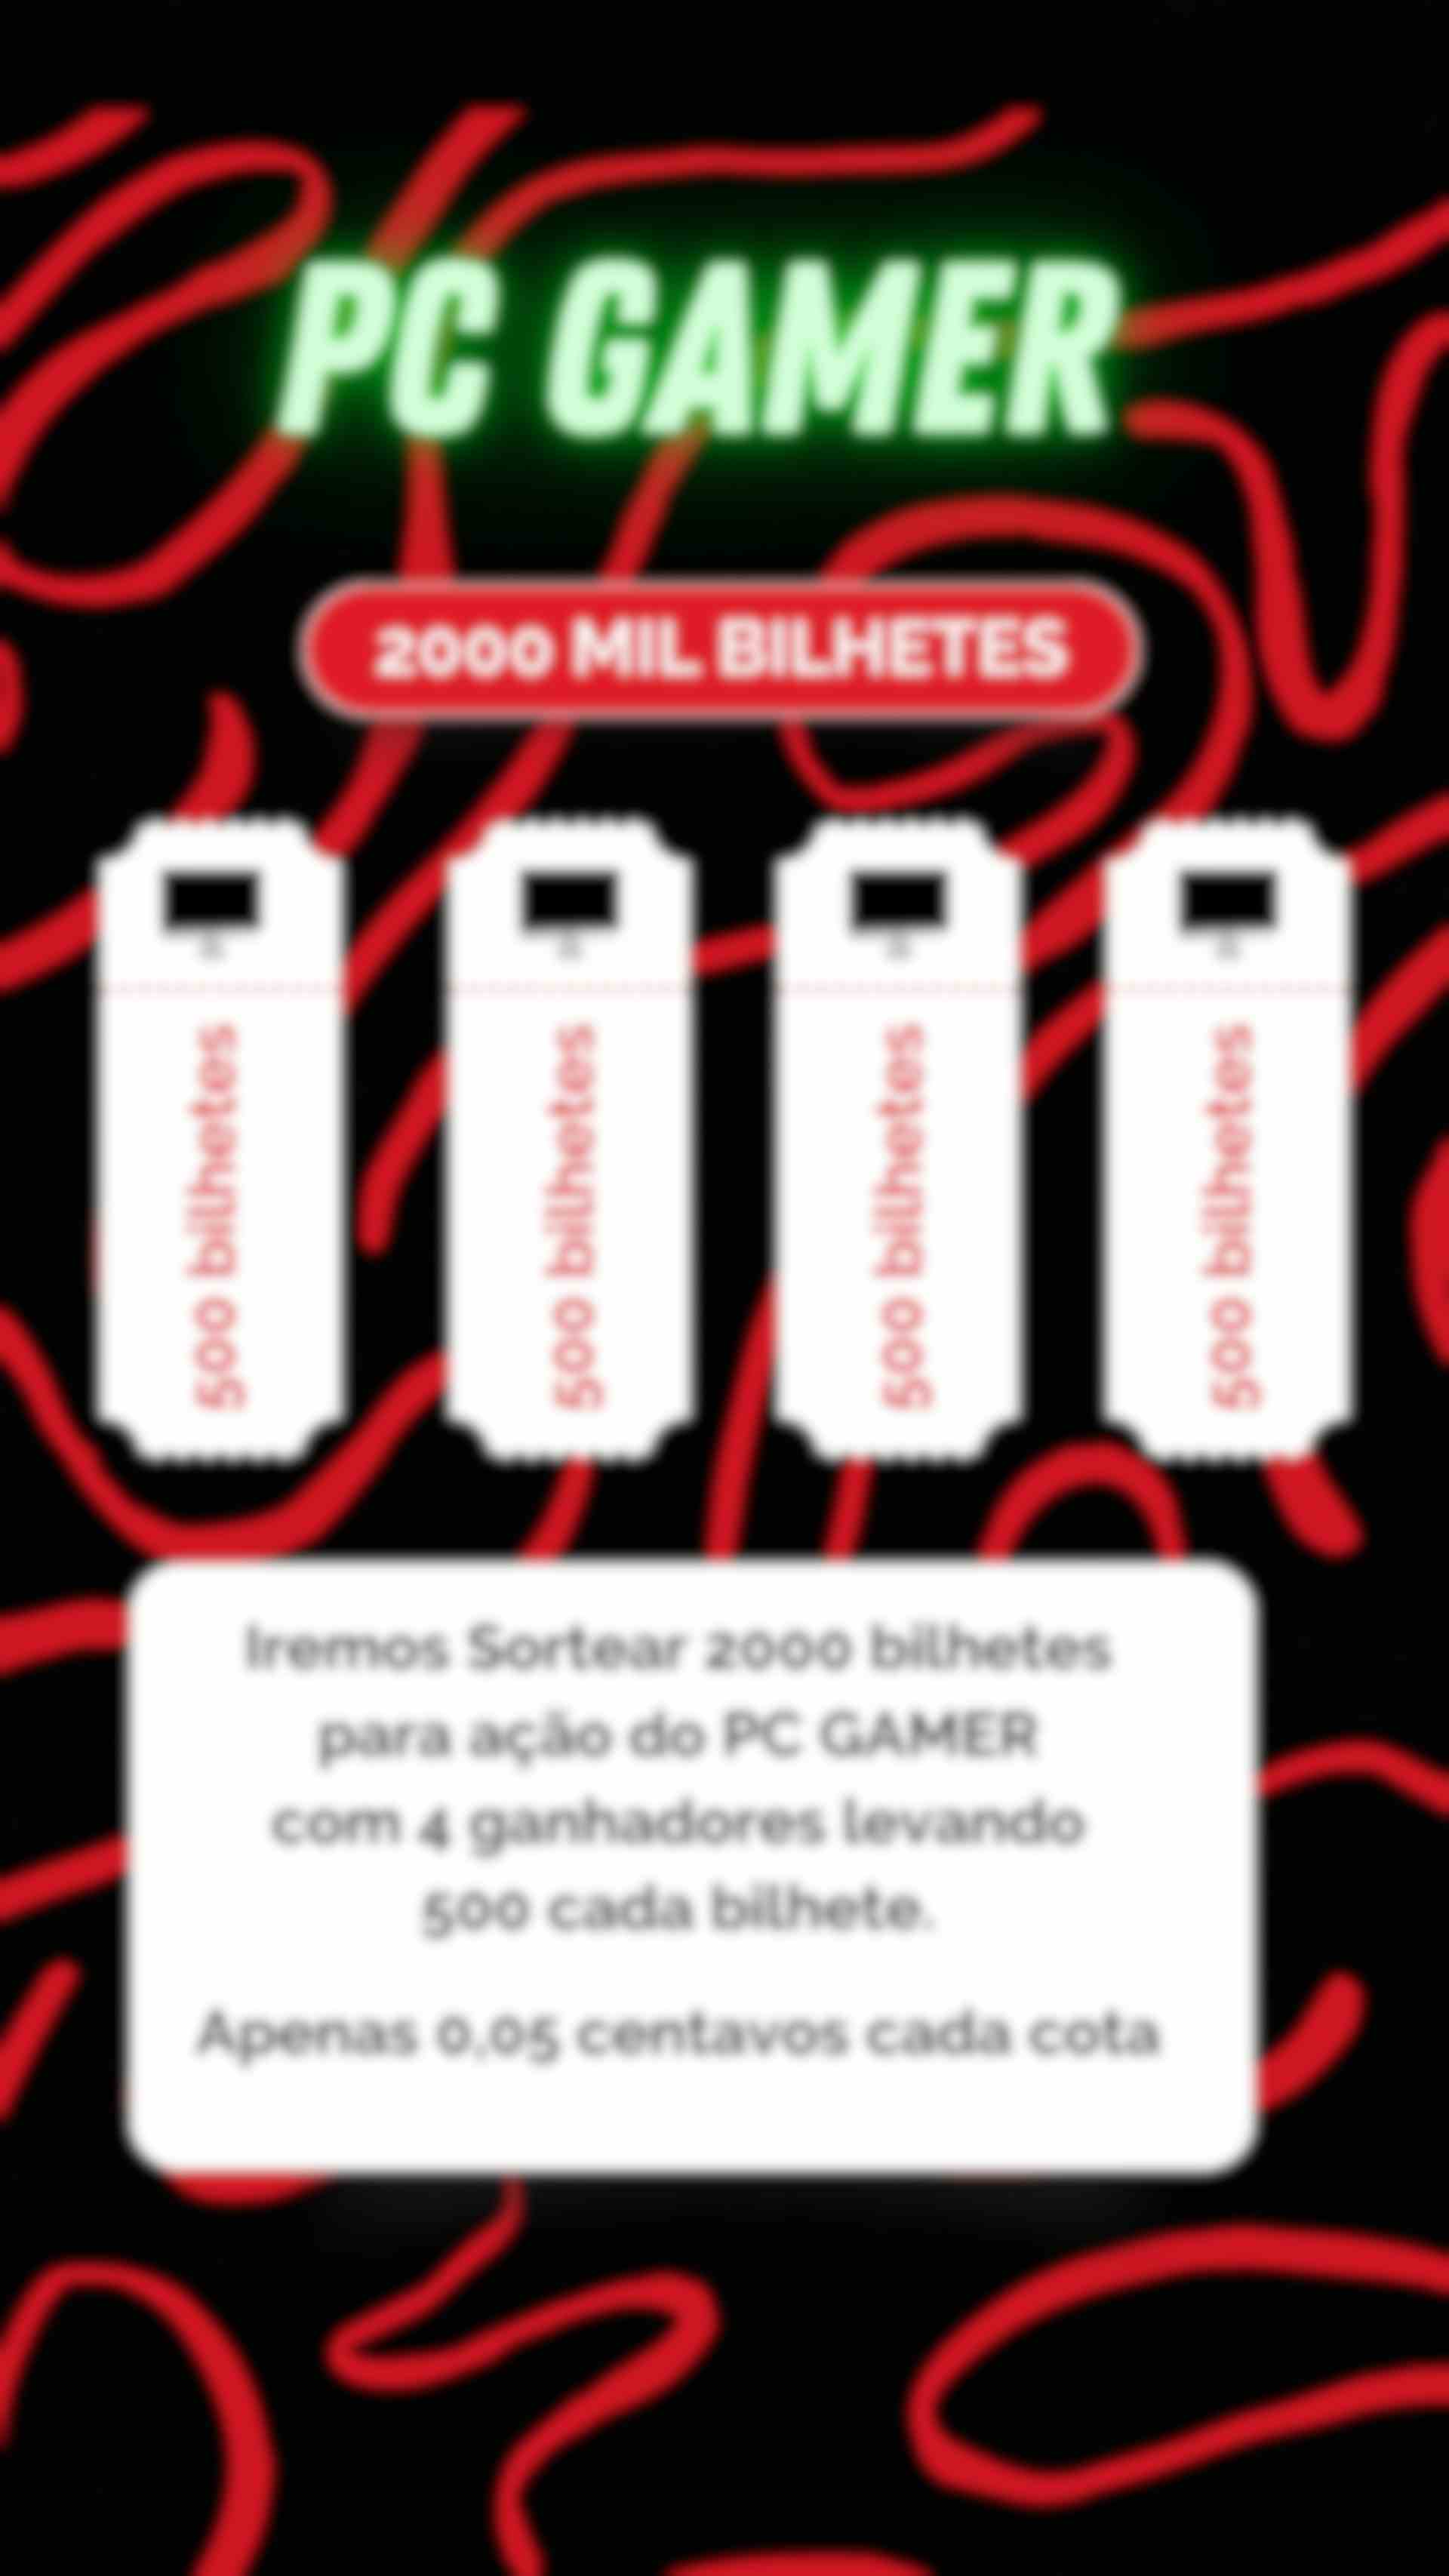 2000 MIL BILHETES PARA 9ª EDIÇÃO DO PC GAMER 4 GANHADORES 500 CADA